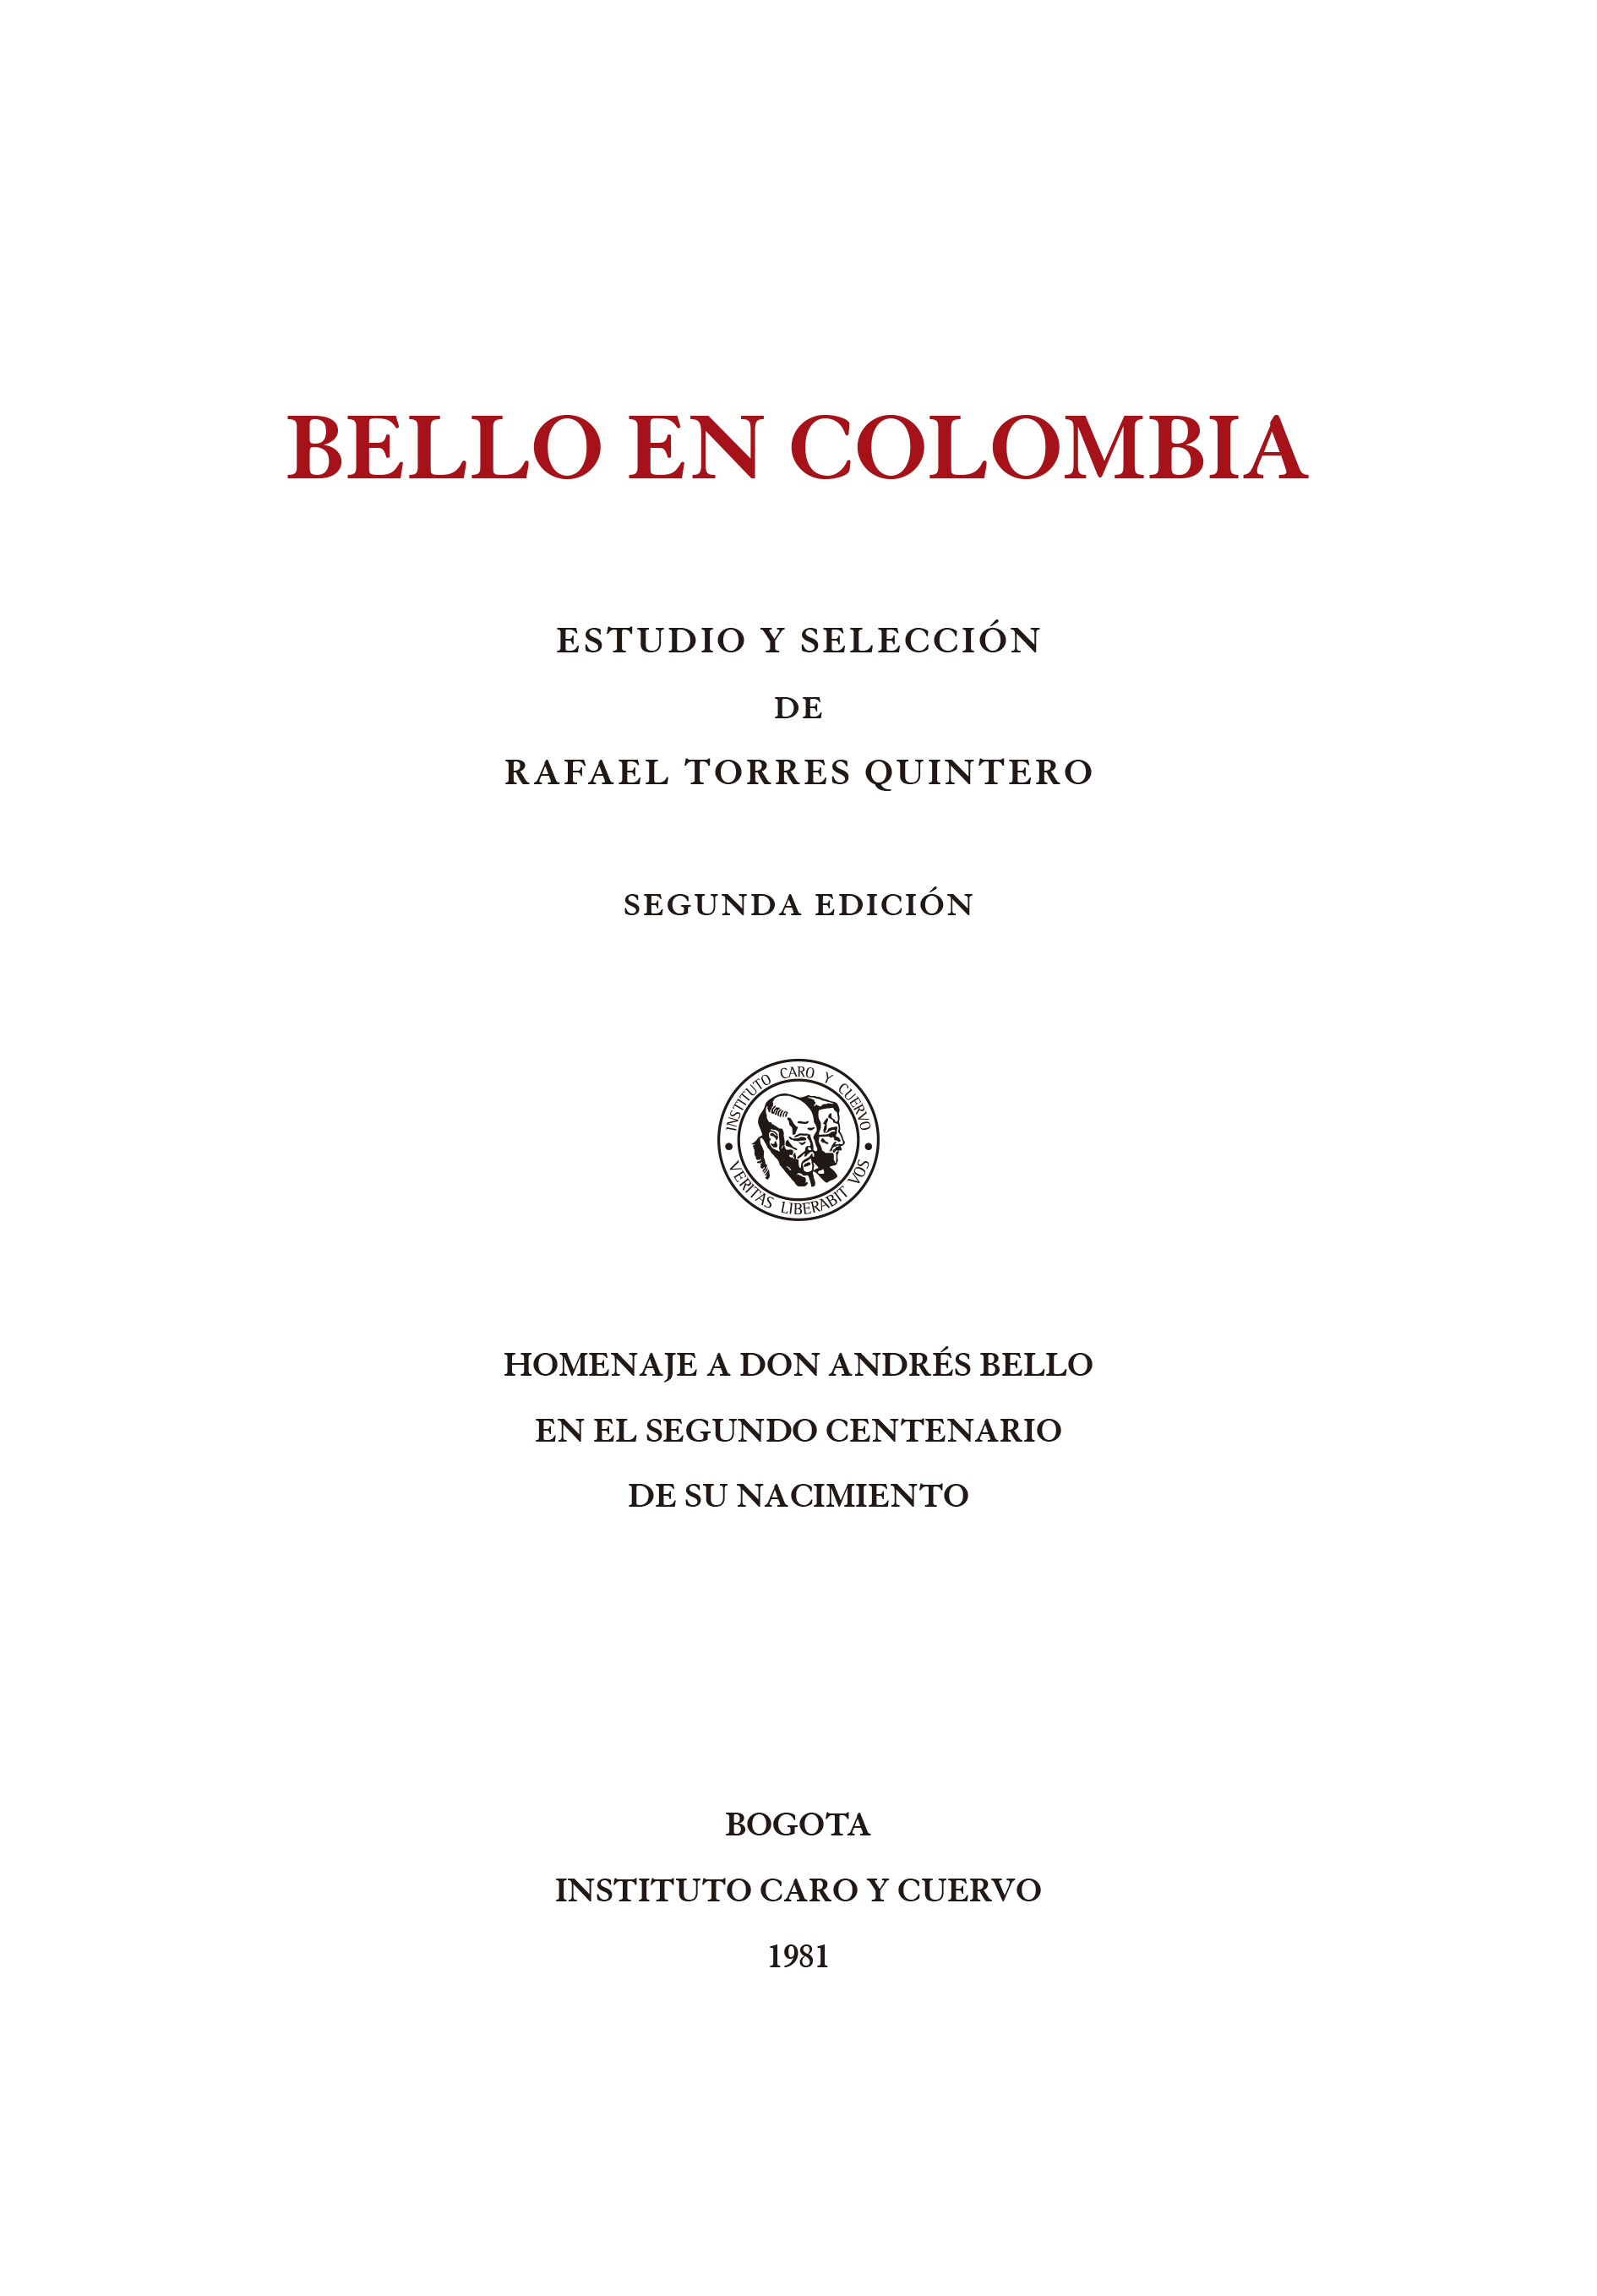 Bello en Colombia. Estudio y selección, 2a. ed. Homenaje a don Andrés Bello en el segundo centenario de su nacimiento